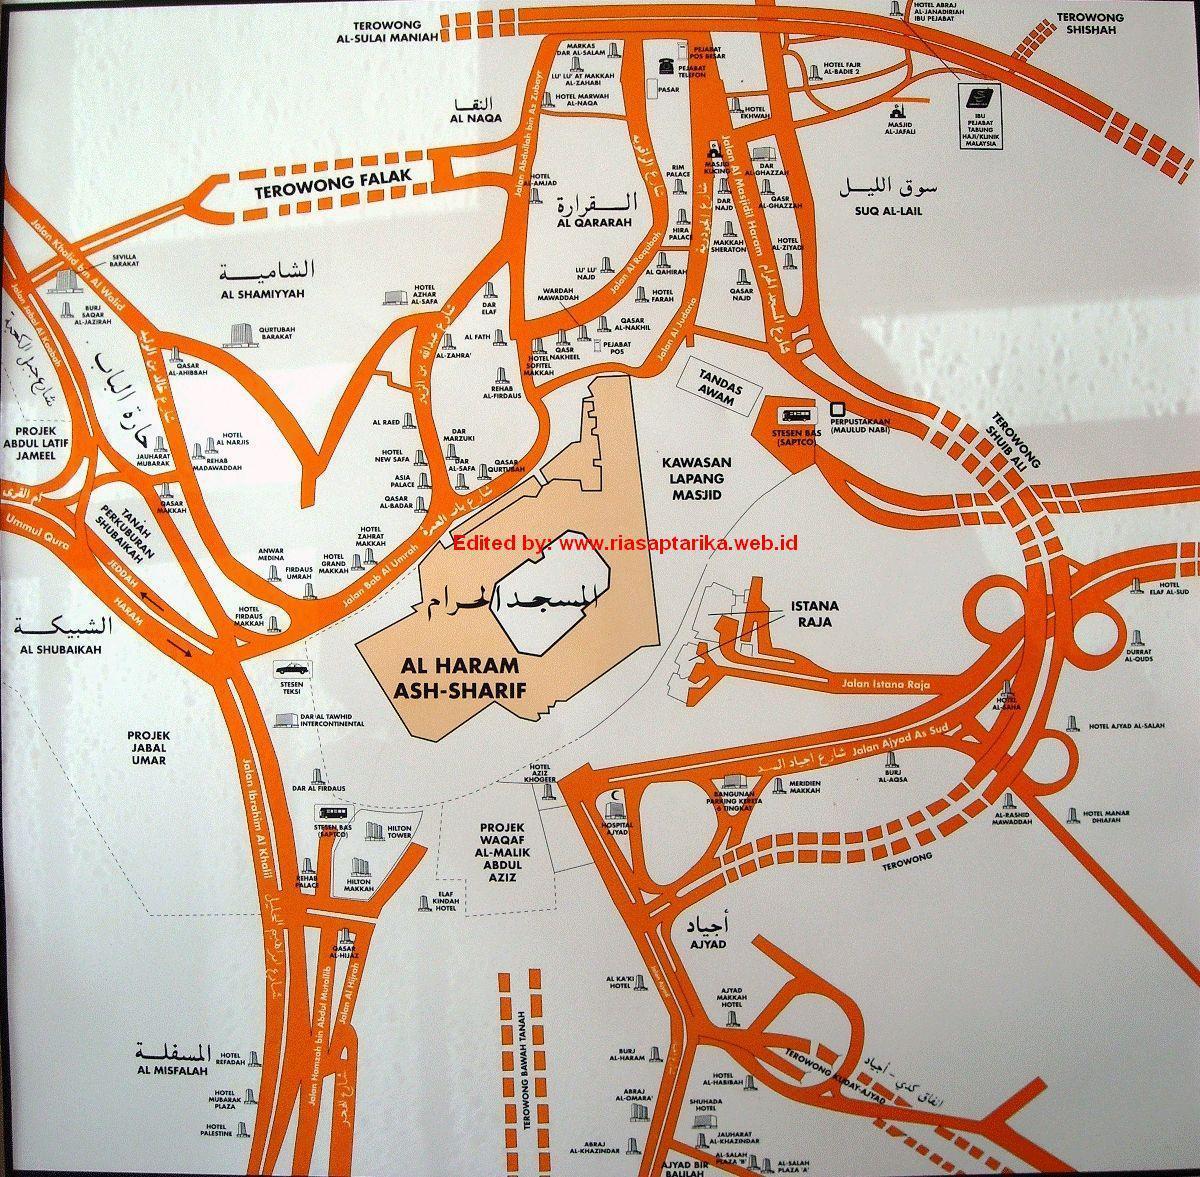 зураг misfalah Makkah газрын зураг